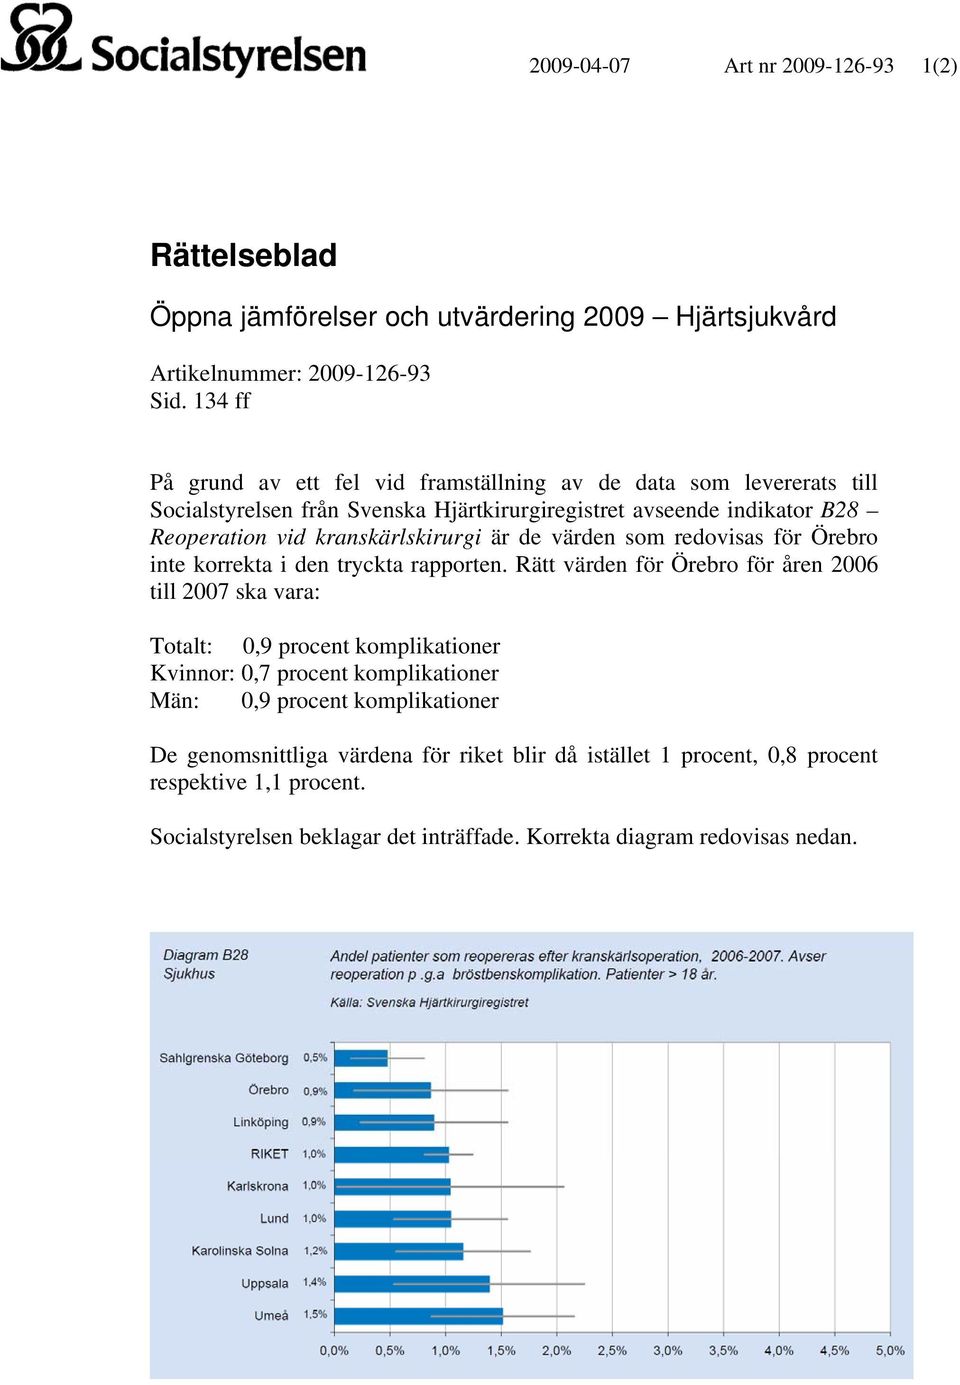 kranskärlskirurgi är de värden som redovisas för Örebro inte korrekta i den tryckta rapporten.